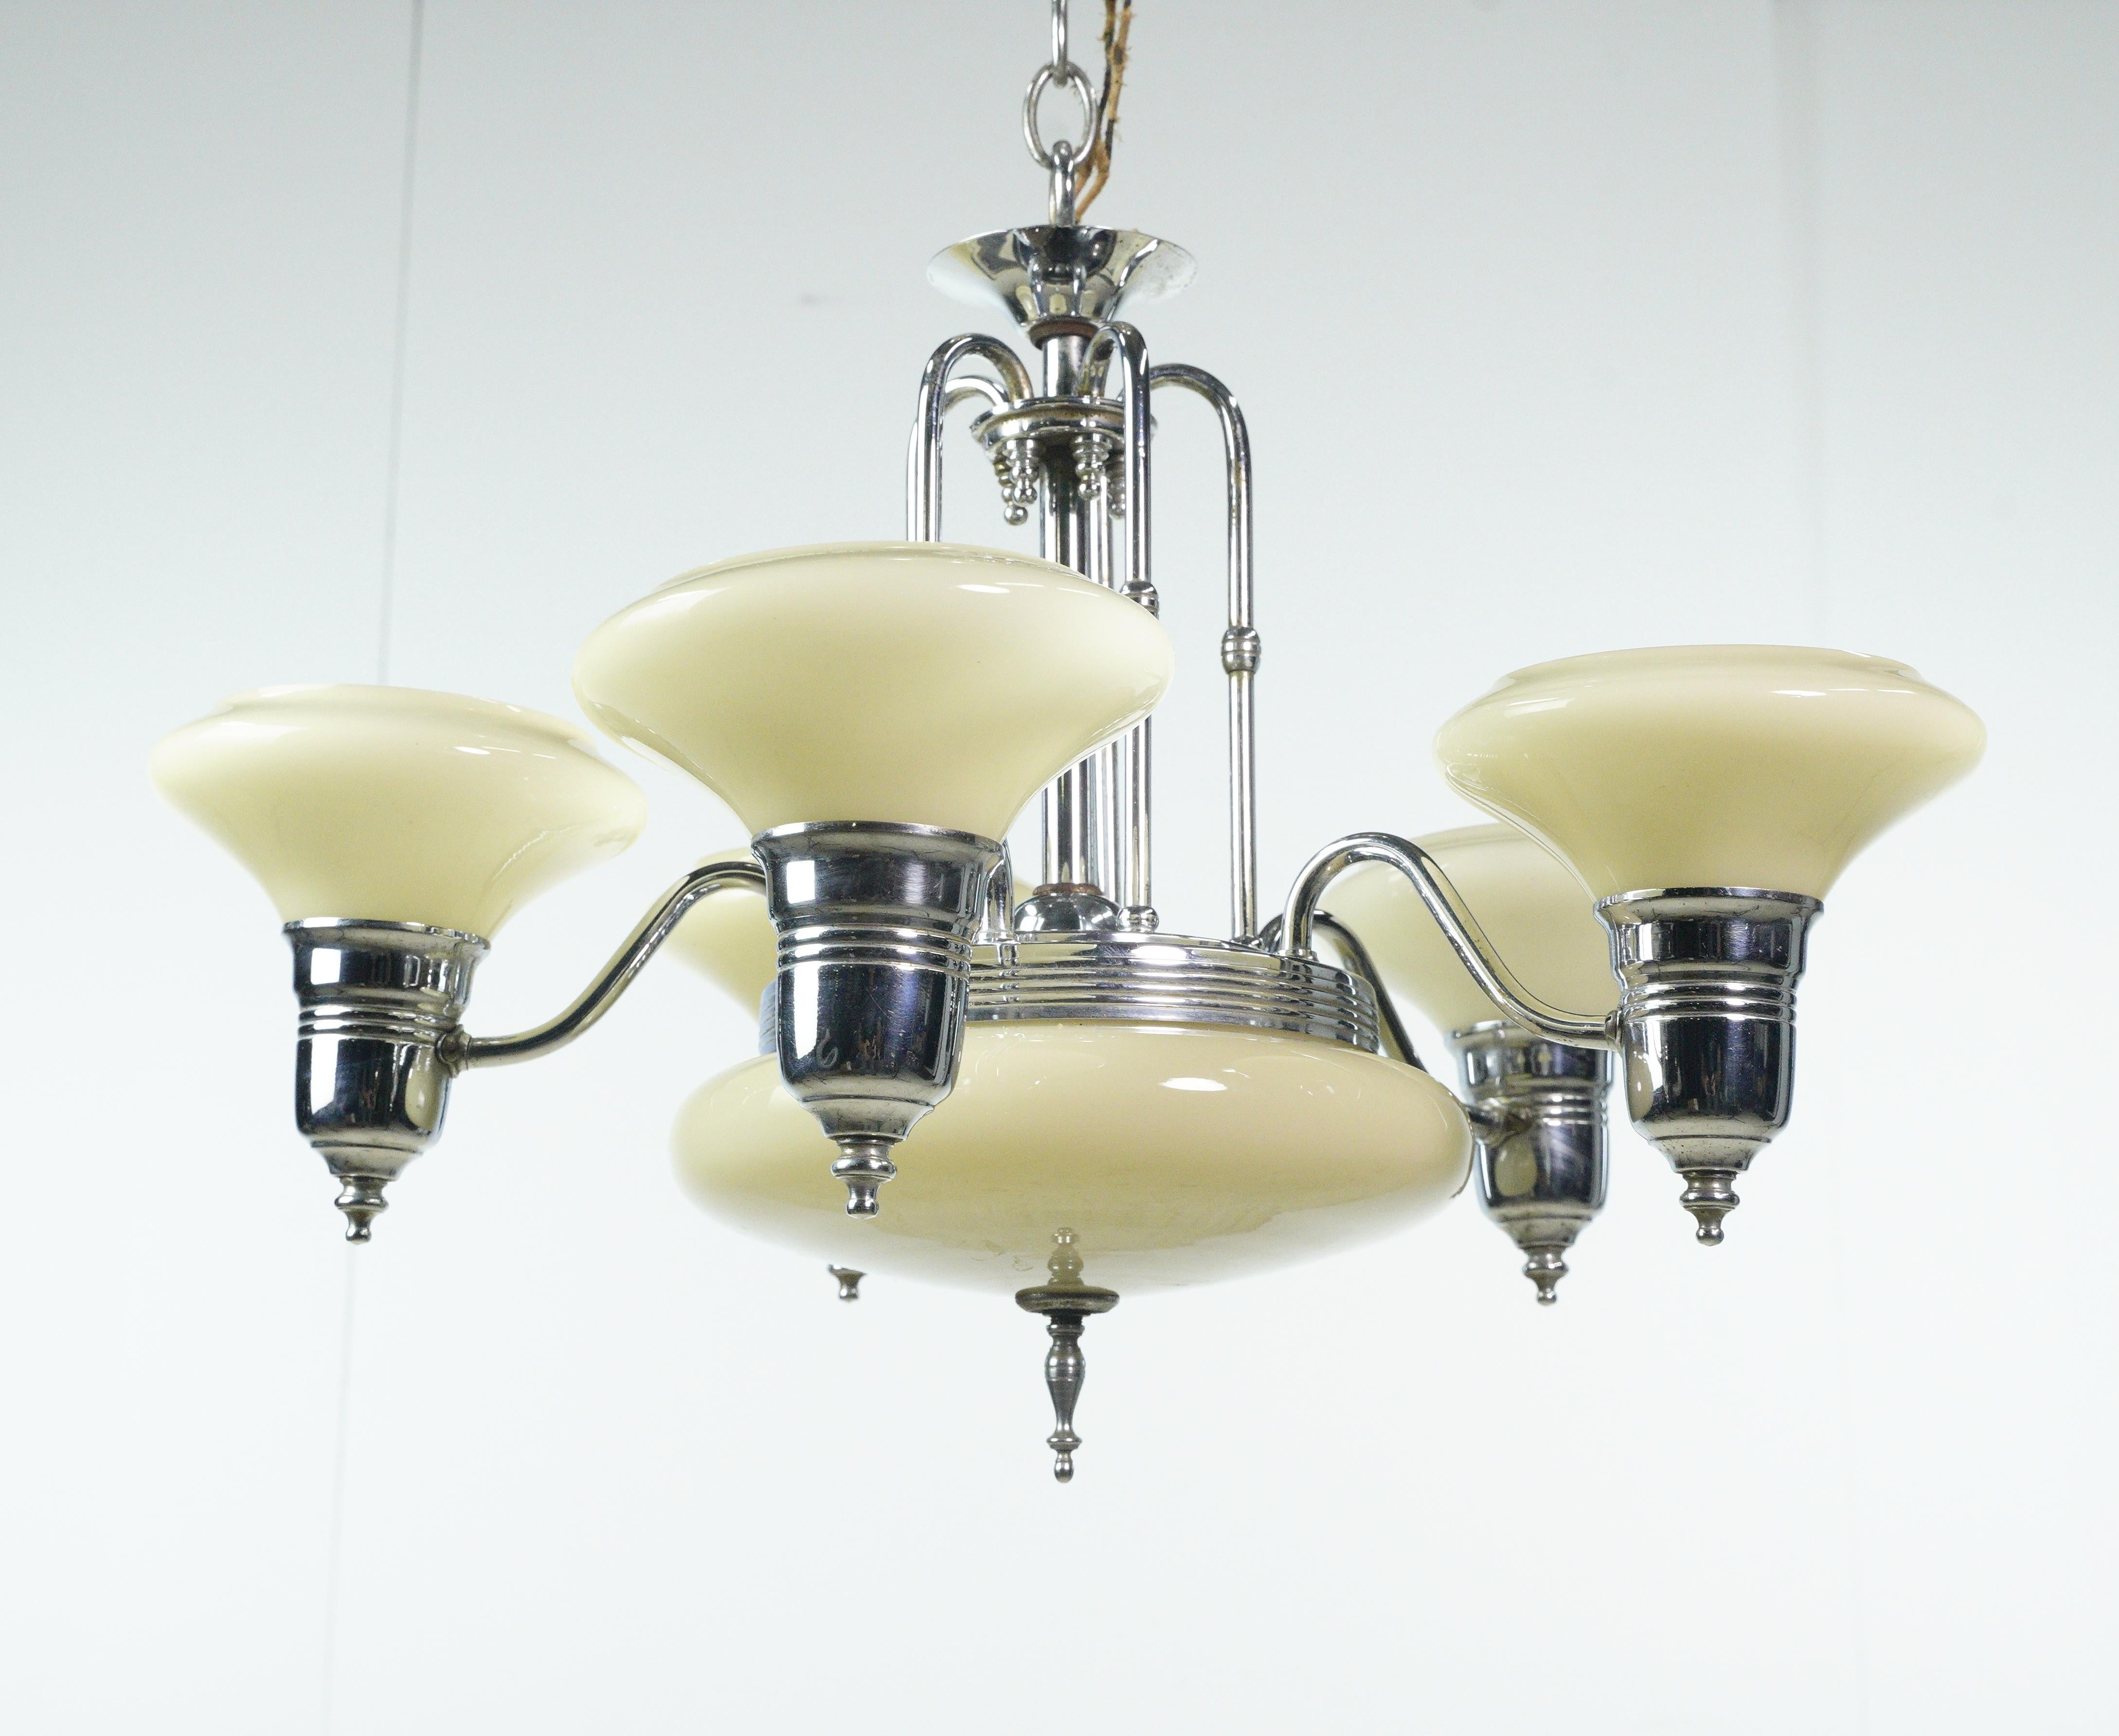 Dieser Art-Deco-Kronleuchter aus den 1950er Jahren ist eine stilvolle Leuchte mit weißen Glasschirmen, einem weißen Glasfuß und einer fünfarmigen Stahlrahmenkonstruktion. Es fängt die Essenz des Art-Déco-Designs ein und verleiht jedem Raum einen